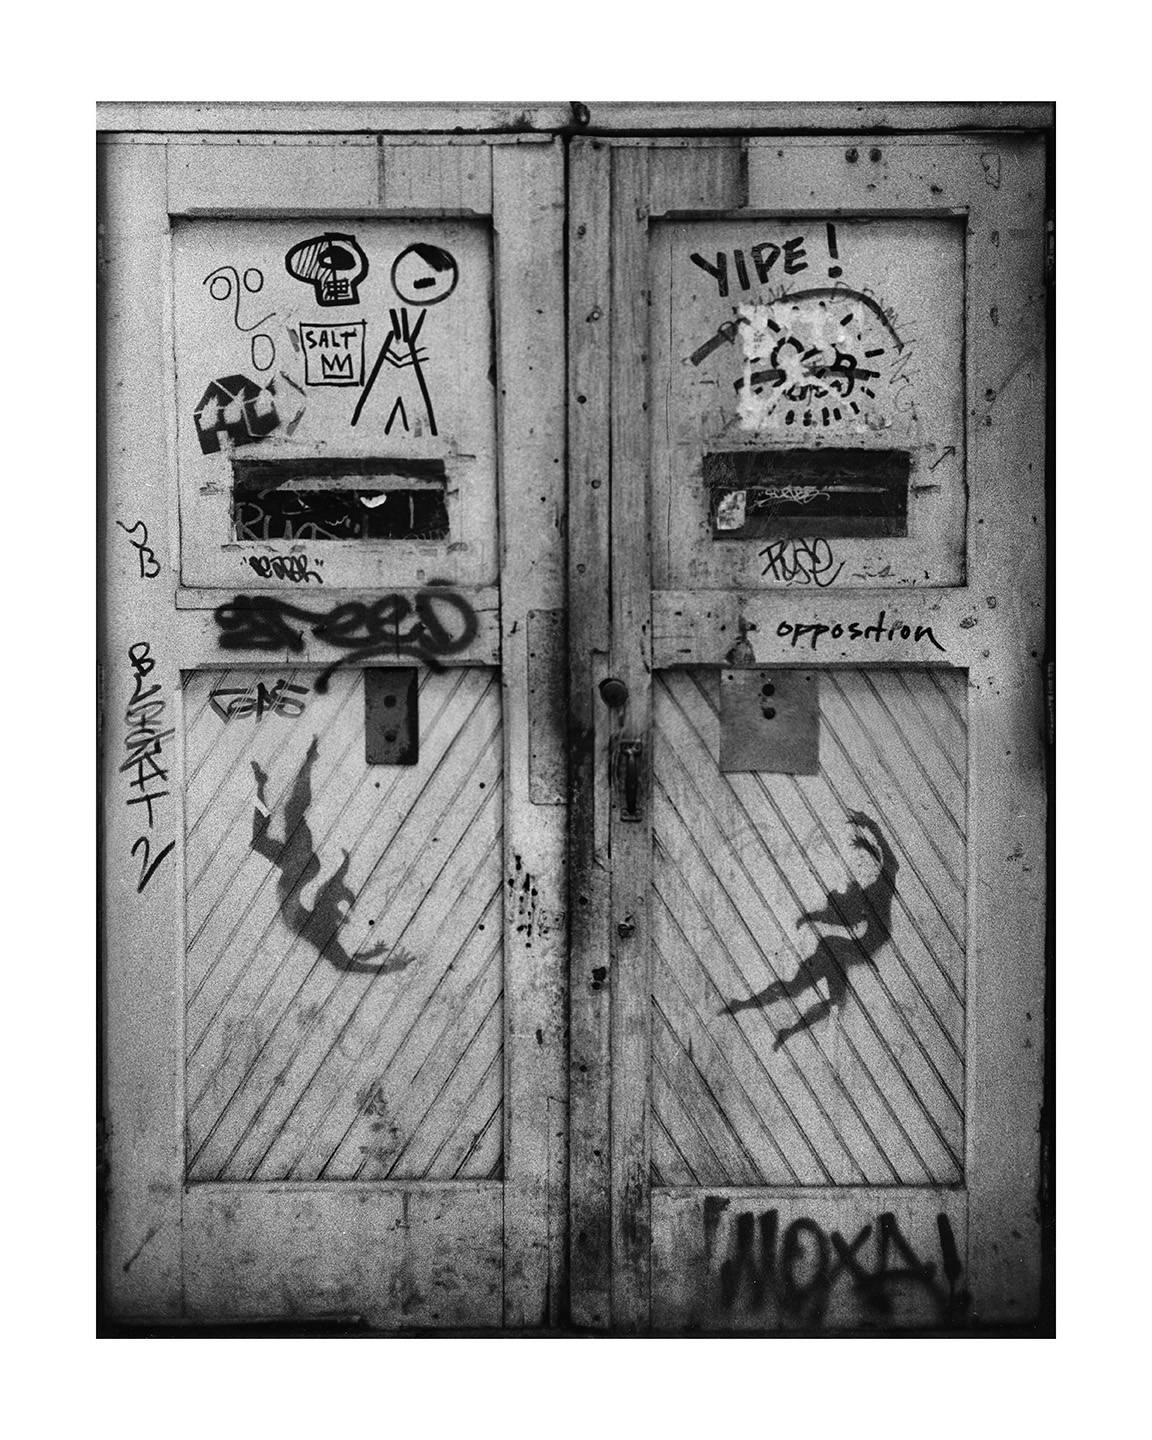 Seltene Basquiat, Keith Haring Street Art Foto, ca. 1979  (Pop-Art), Photograph, von Fernando Natalici